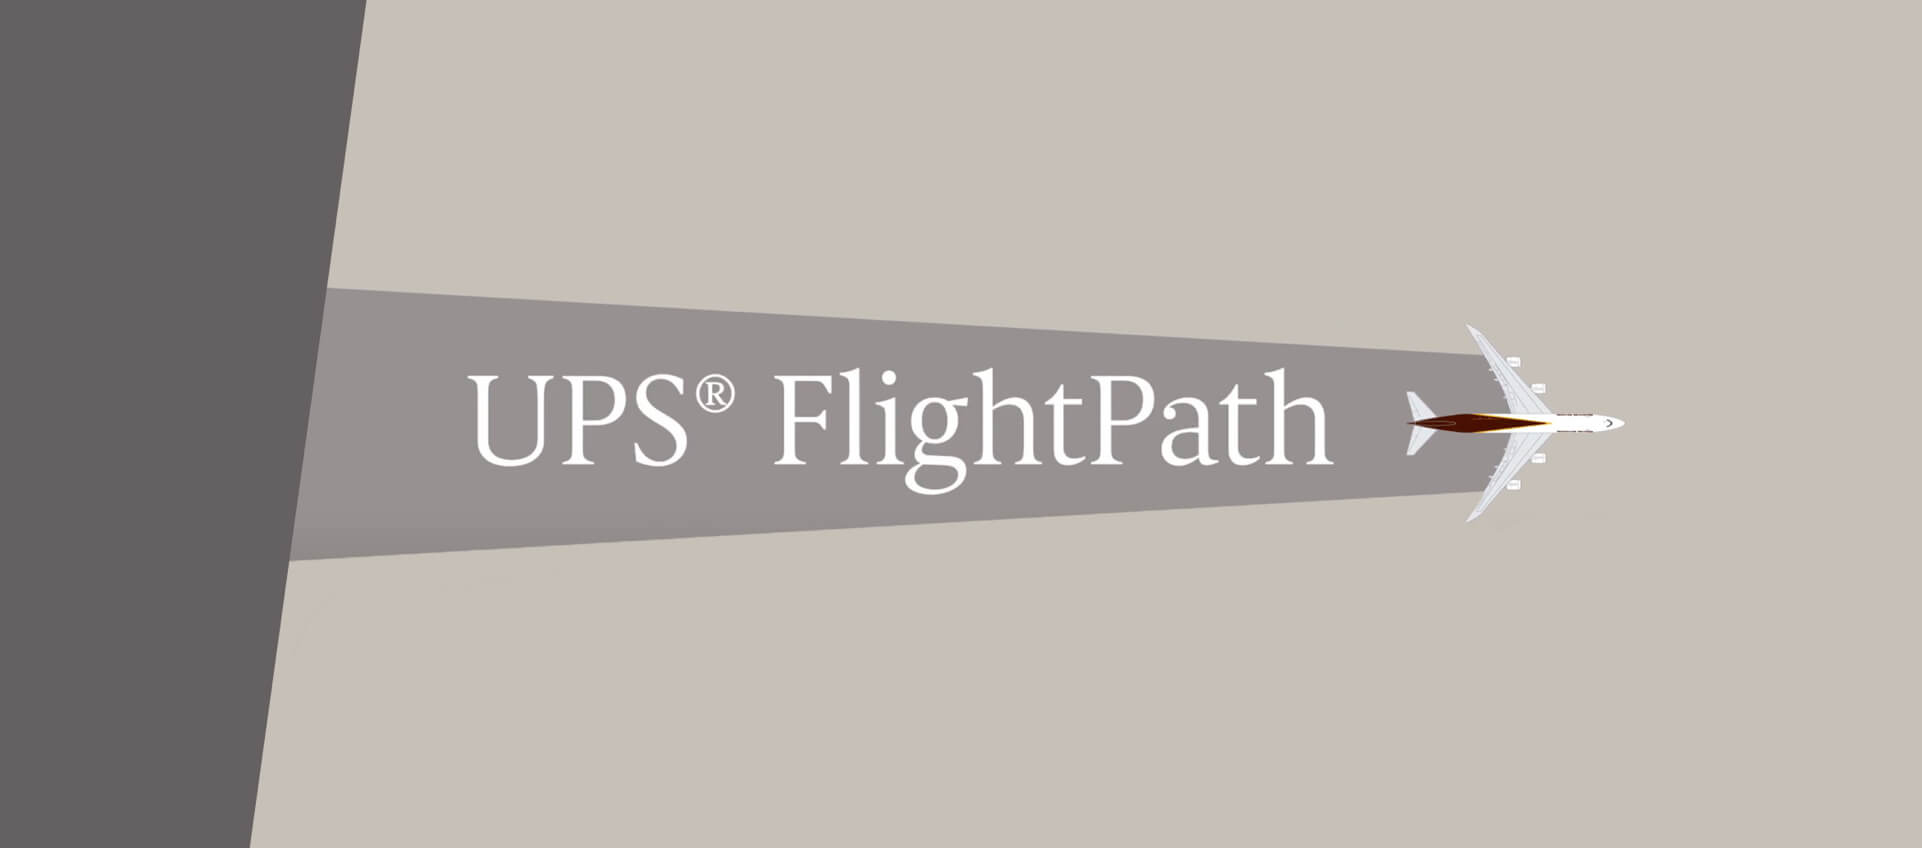 UPS flightpath